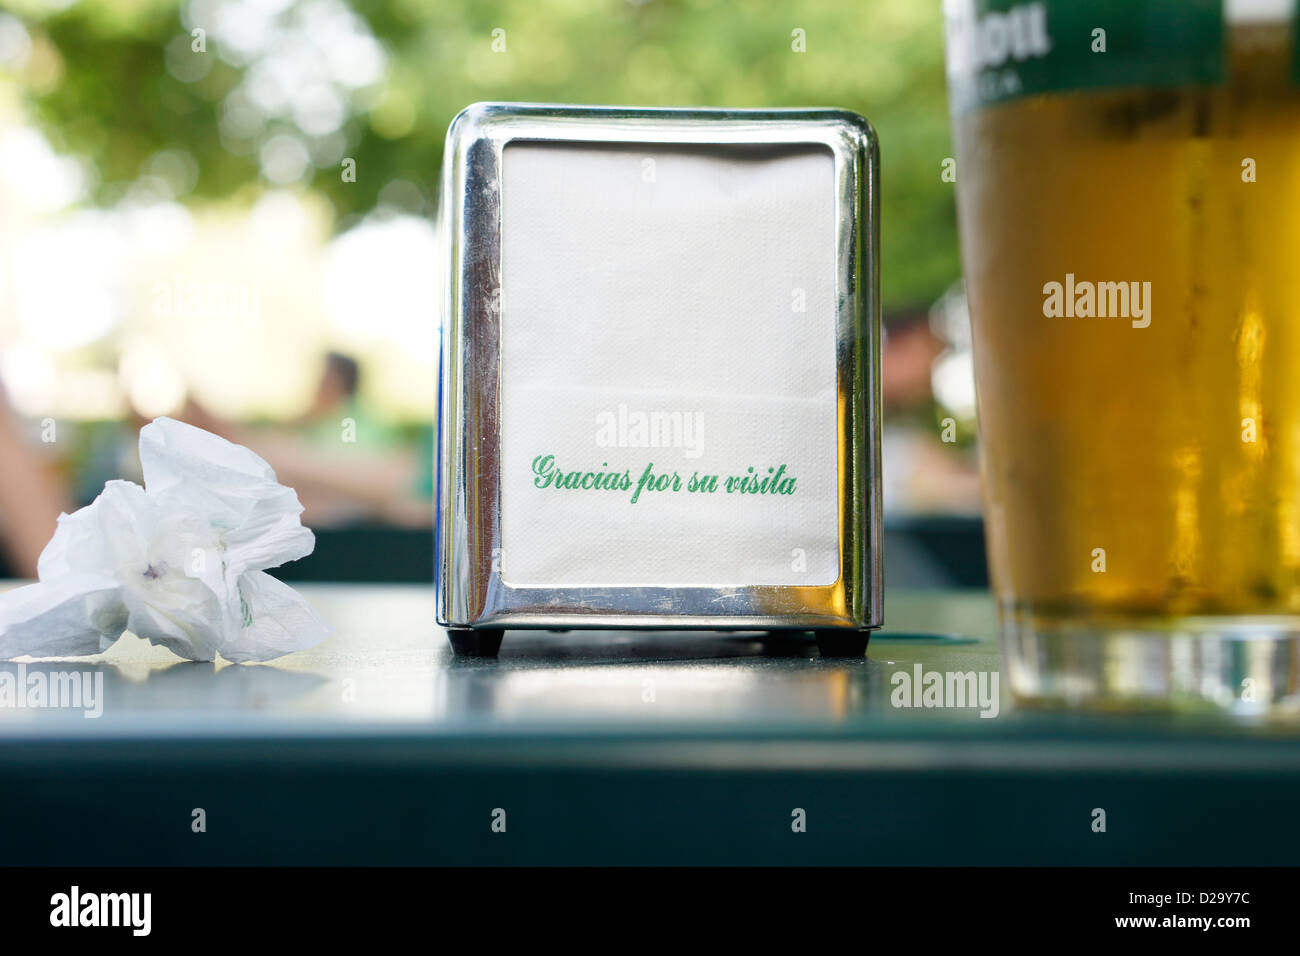 Retiro park Madrid Spanien Serviette Serviette Bier "Gracias Por Su Visita" Stockfoto